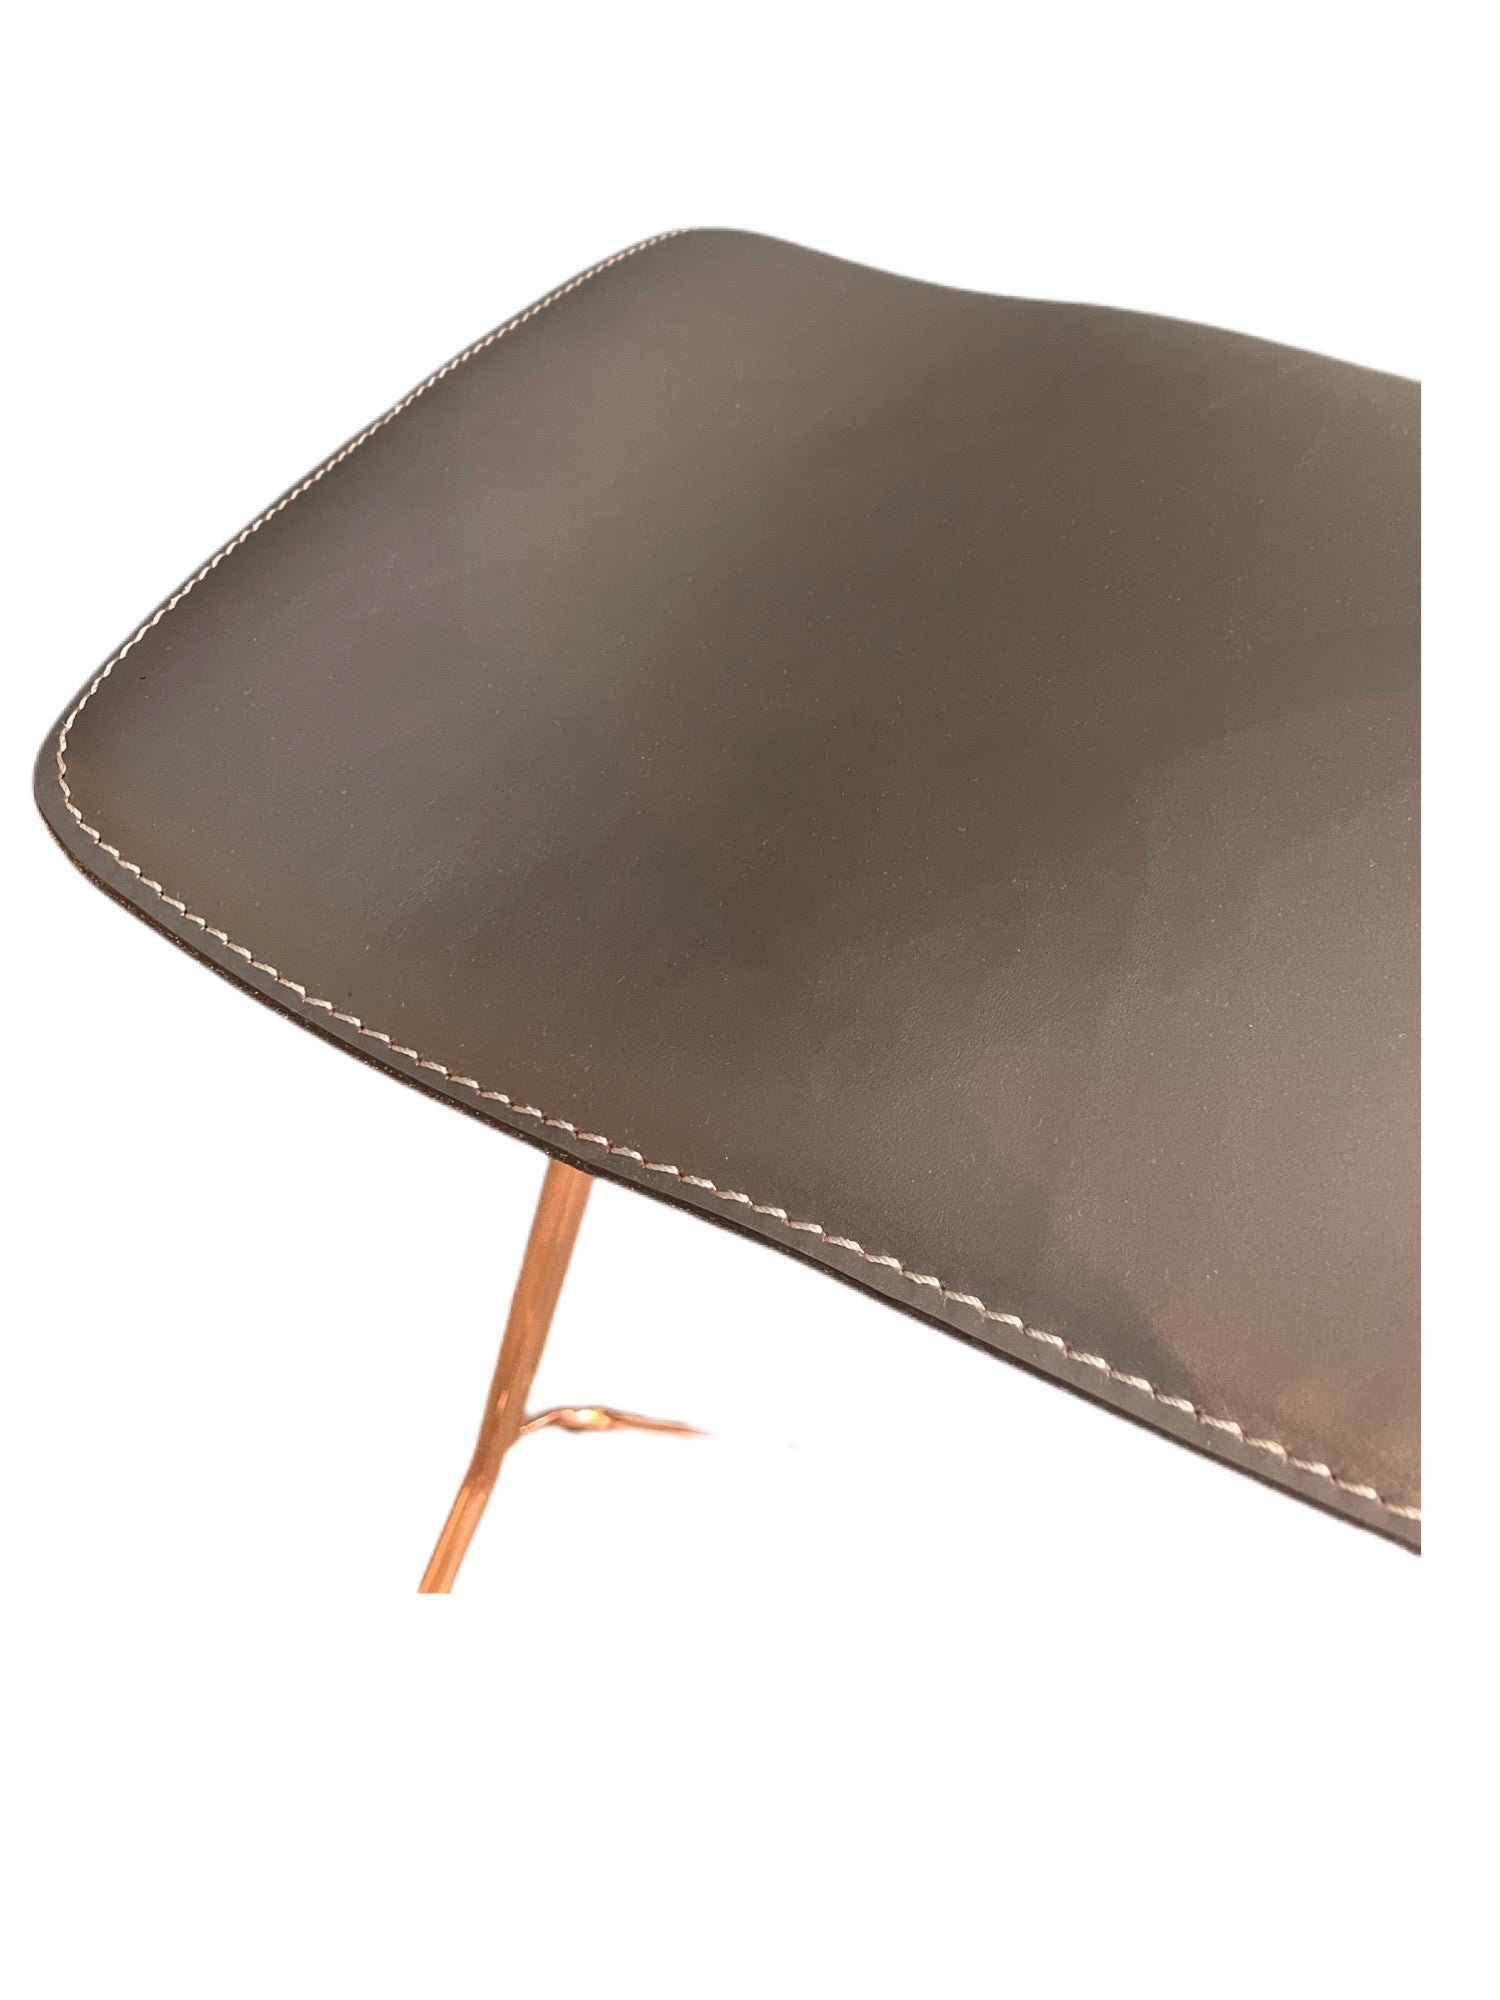 Classicon / Triton / bar stool